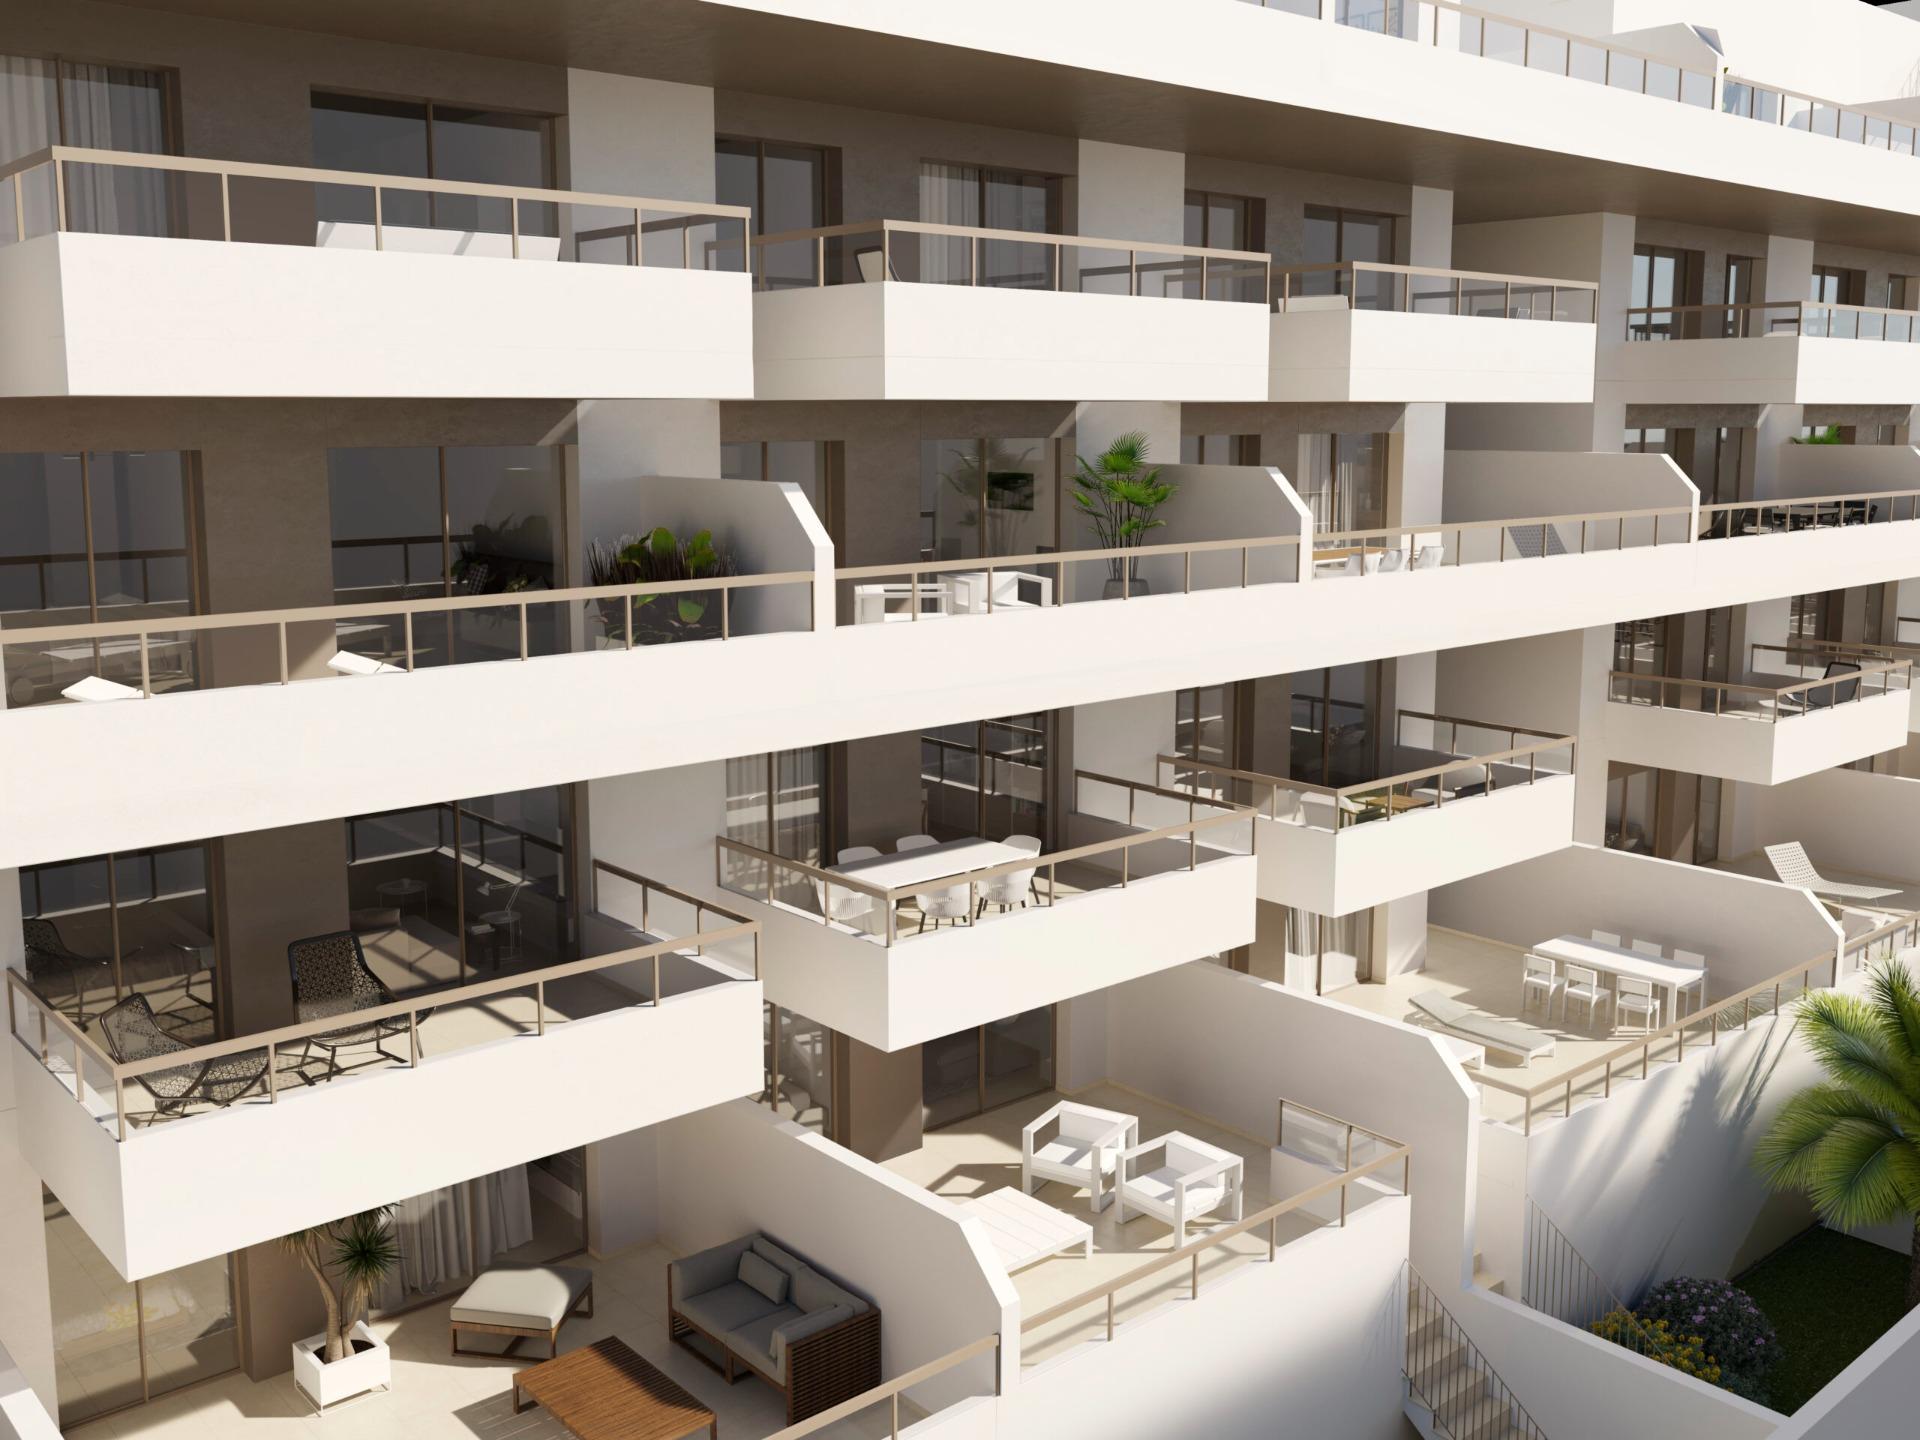 Residencial de 40 viviendas con preciosos apartamentos de 2 y 3 dormitorios de obra nueva a 150 metr